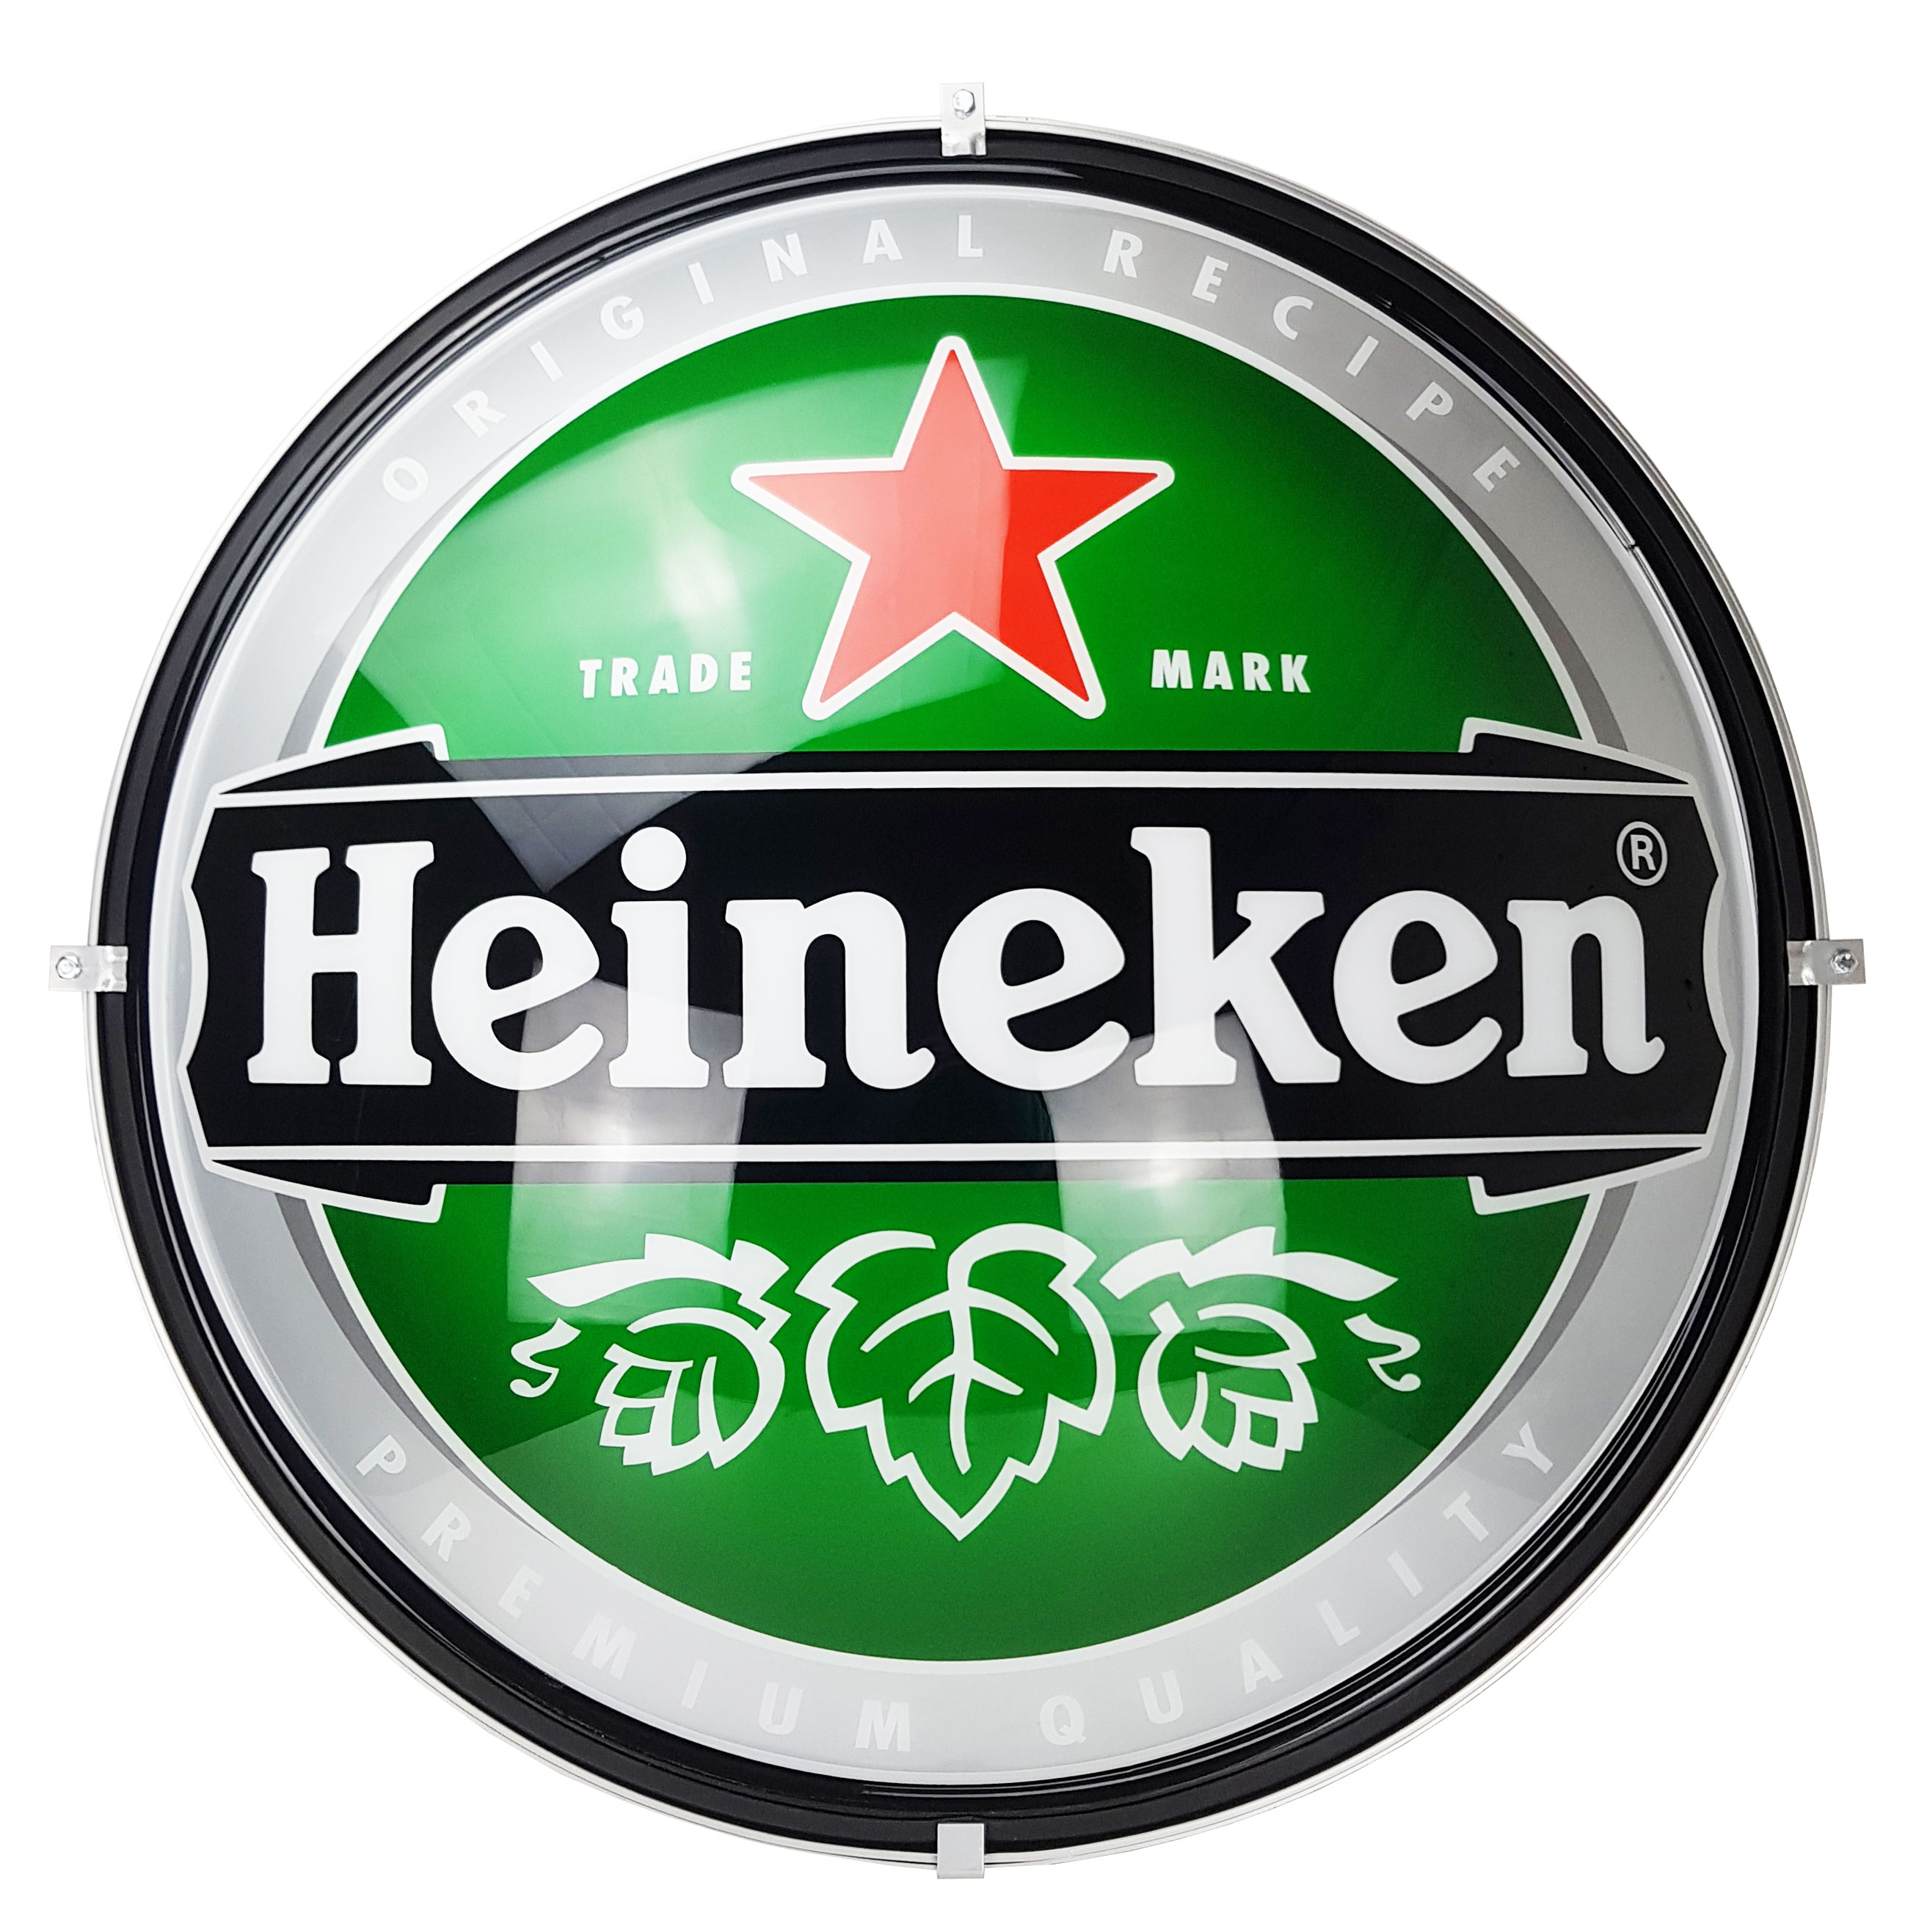 Heineken Leuchtschild Aussenreklame Werbeschild Werbetafel Leuchtreklame LED Beleuchtet Bier Gastronomie - Durchmesser ca. 80cm